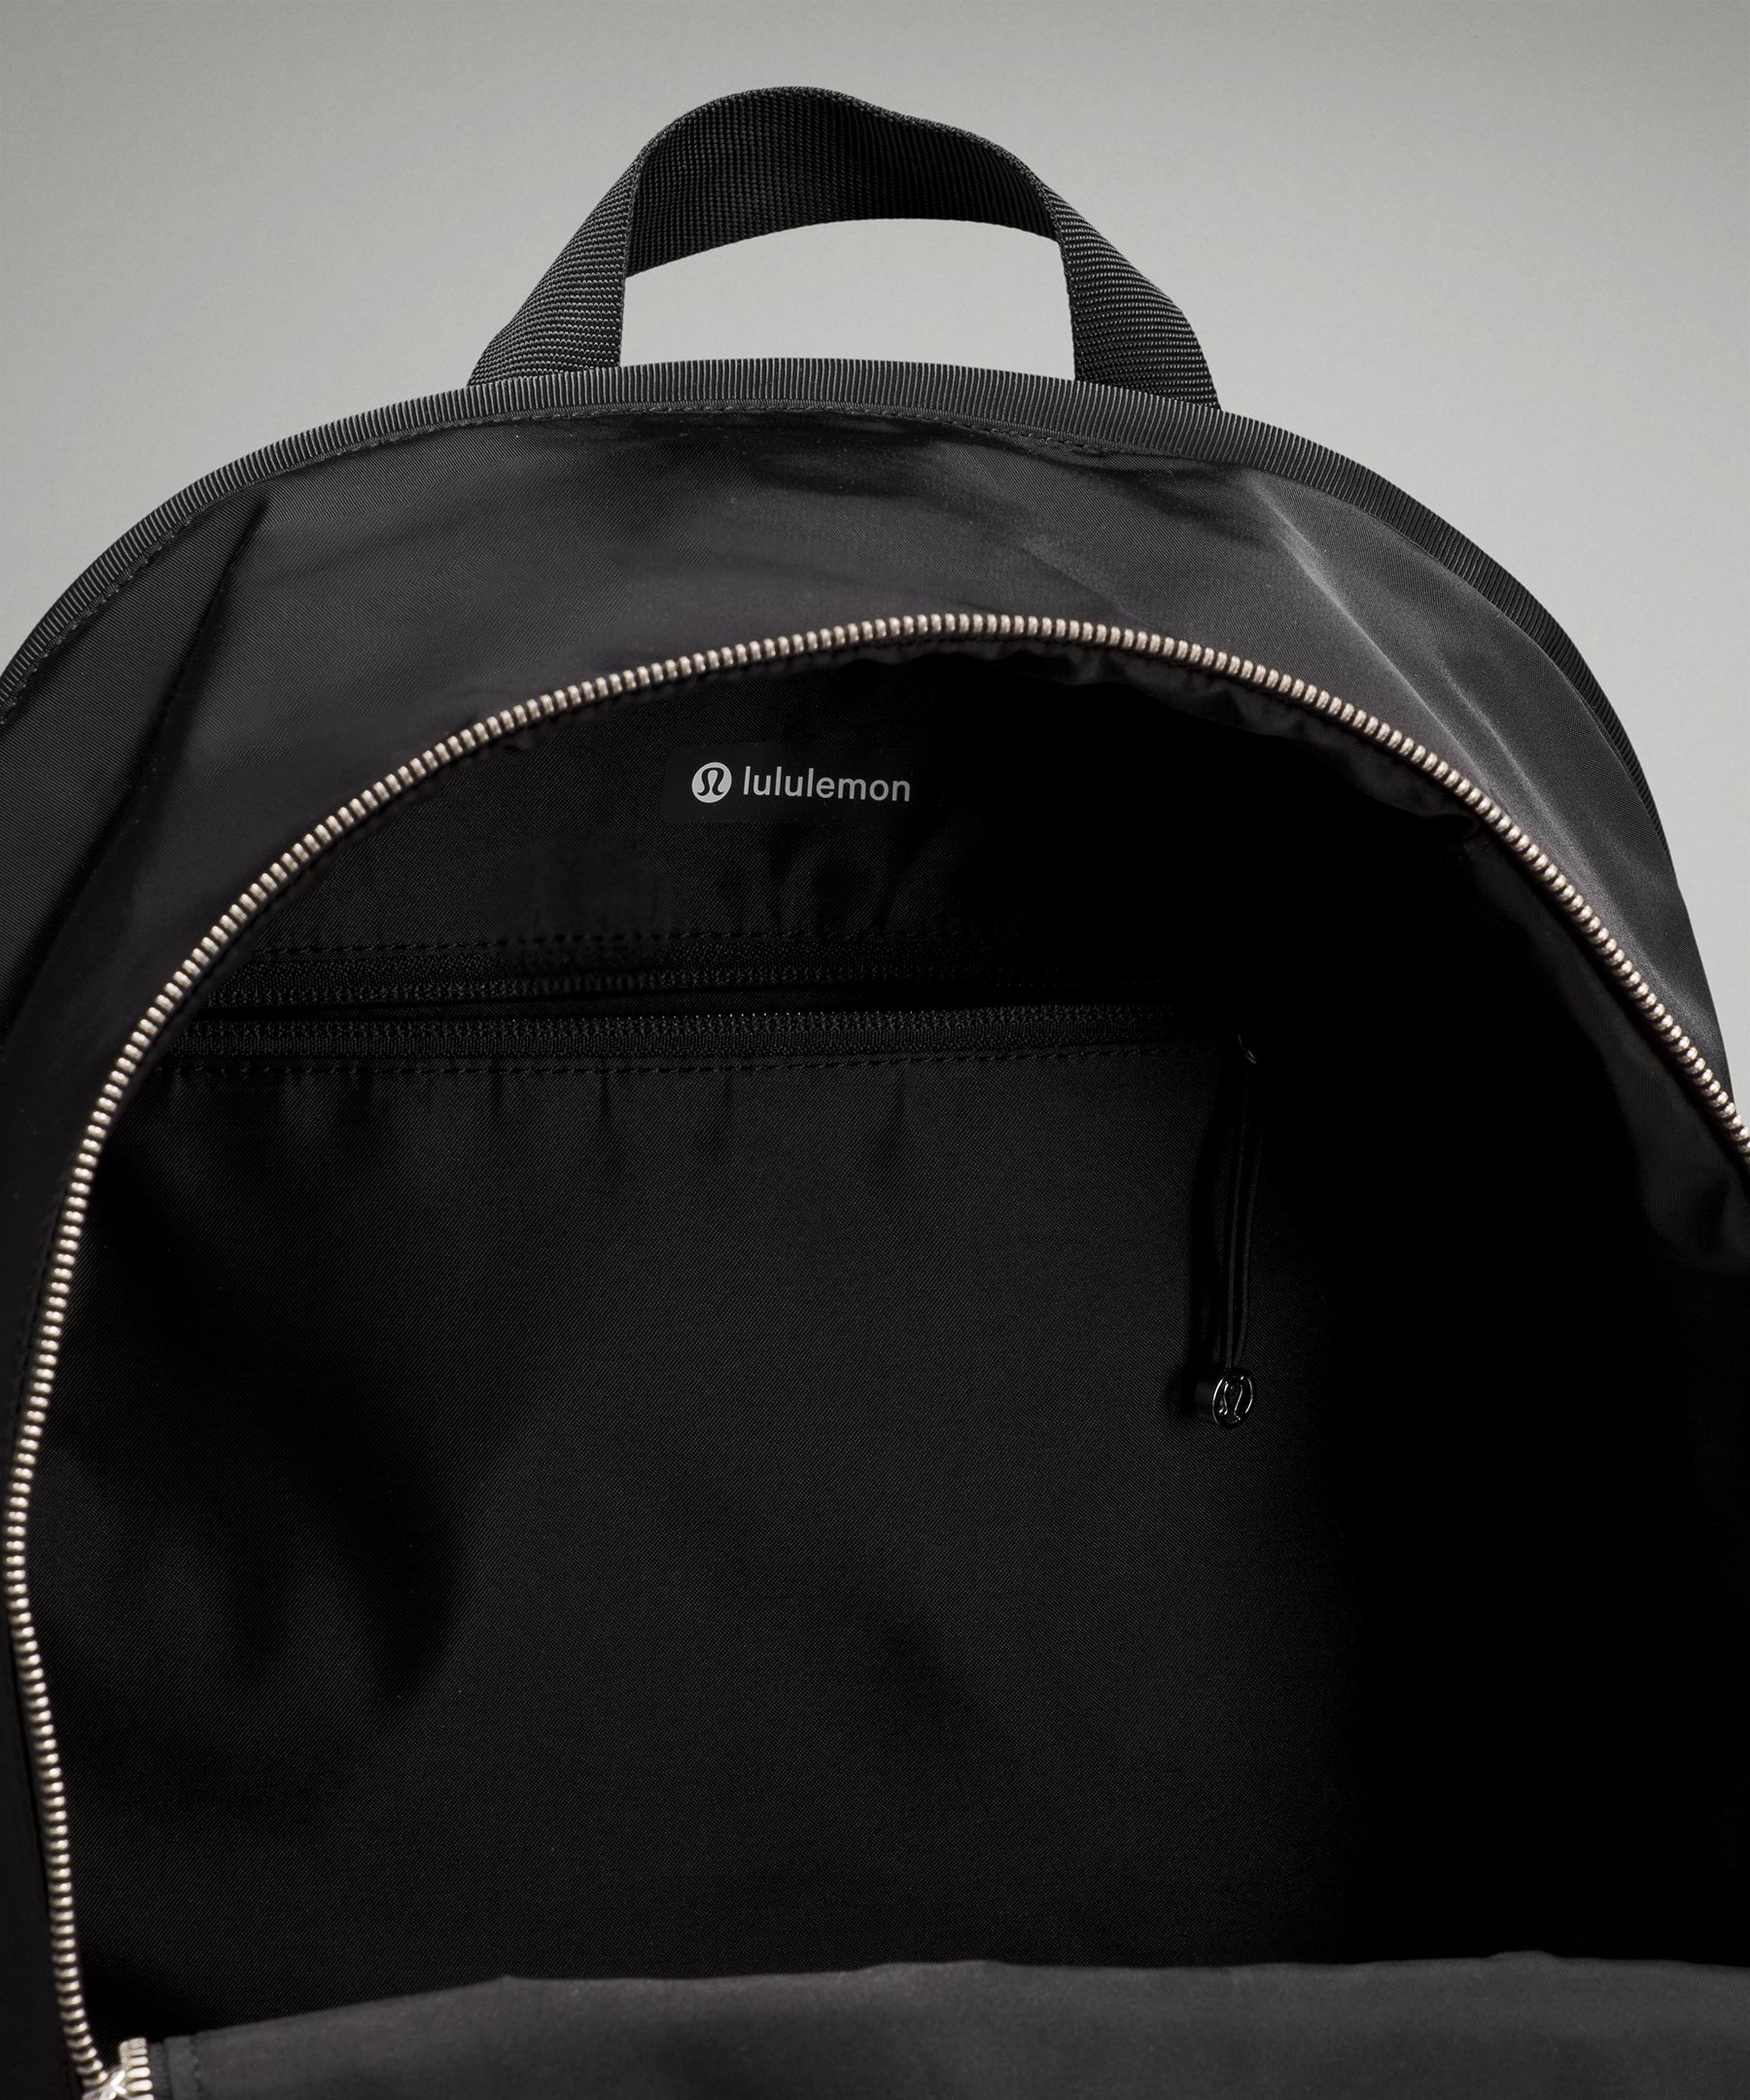 City Adventurer Backpack II | Bags 